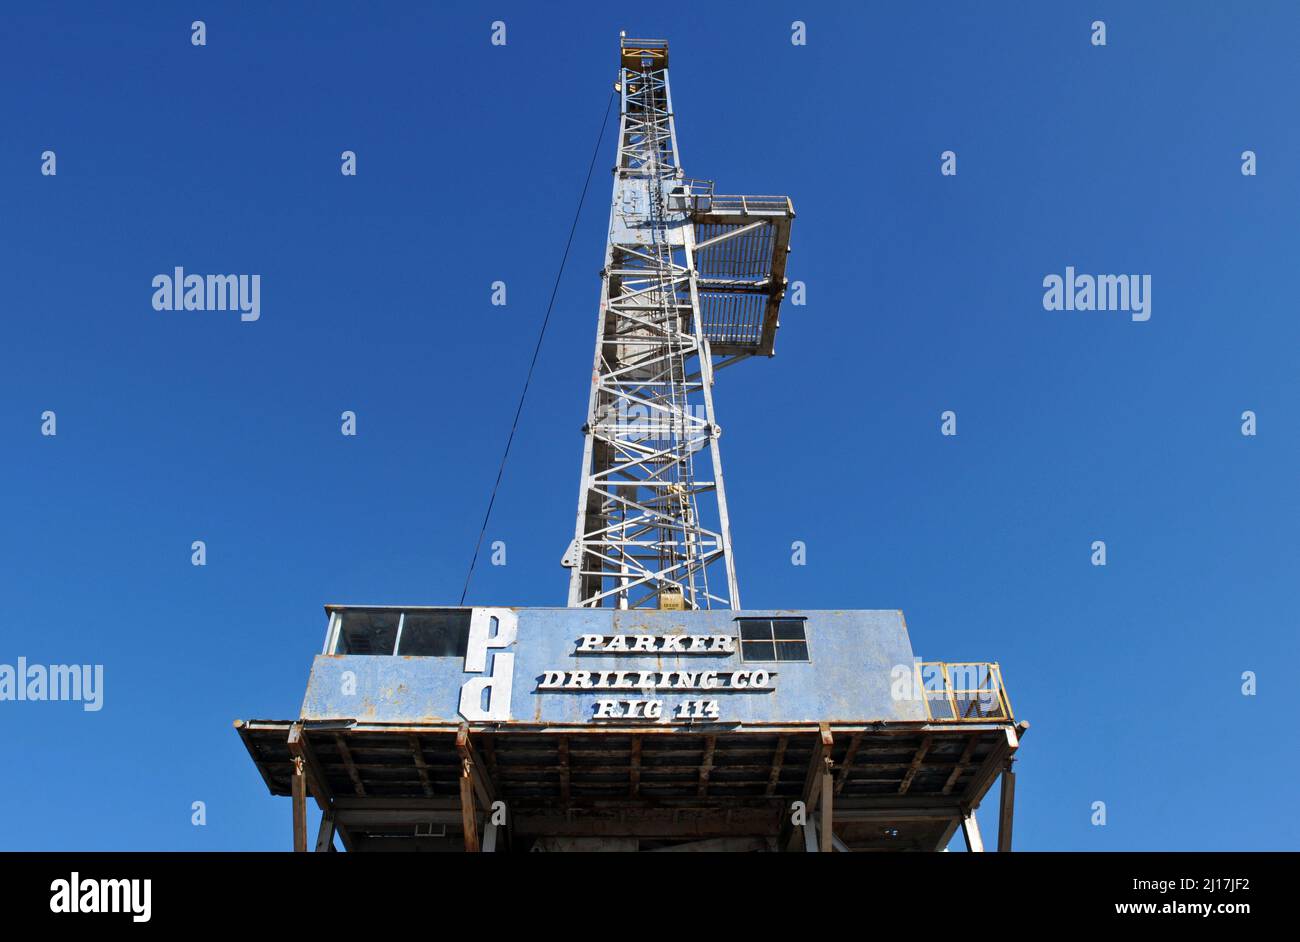 La ricostruita Parker Drilling Company Rig 114 sovrasta Elk City, Oklahoma. Ora un'attrazione turistica, era uno dei carri più alti del mondo. Foto Stock